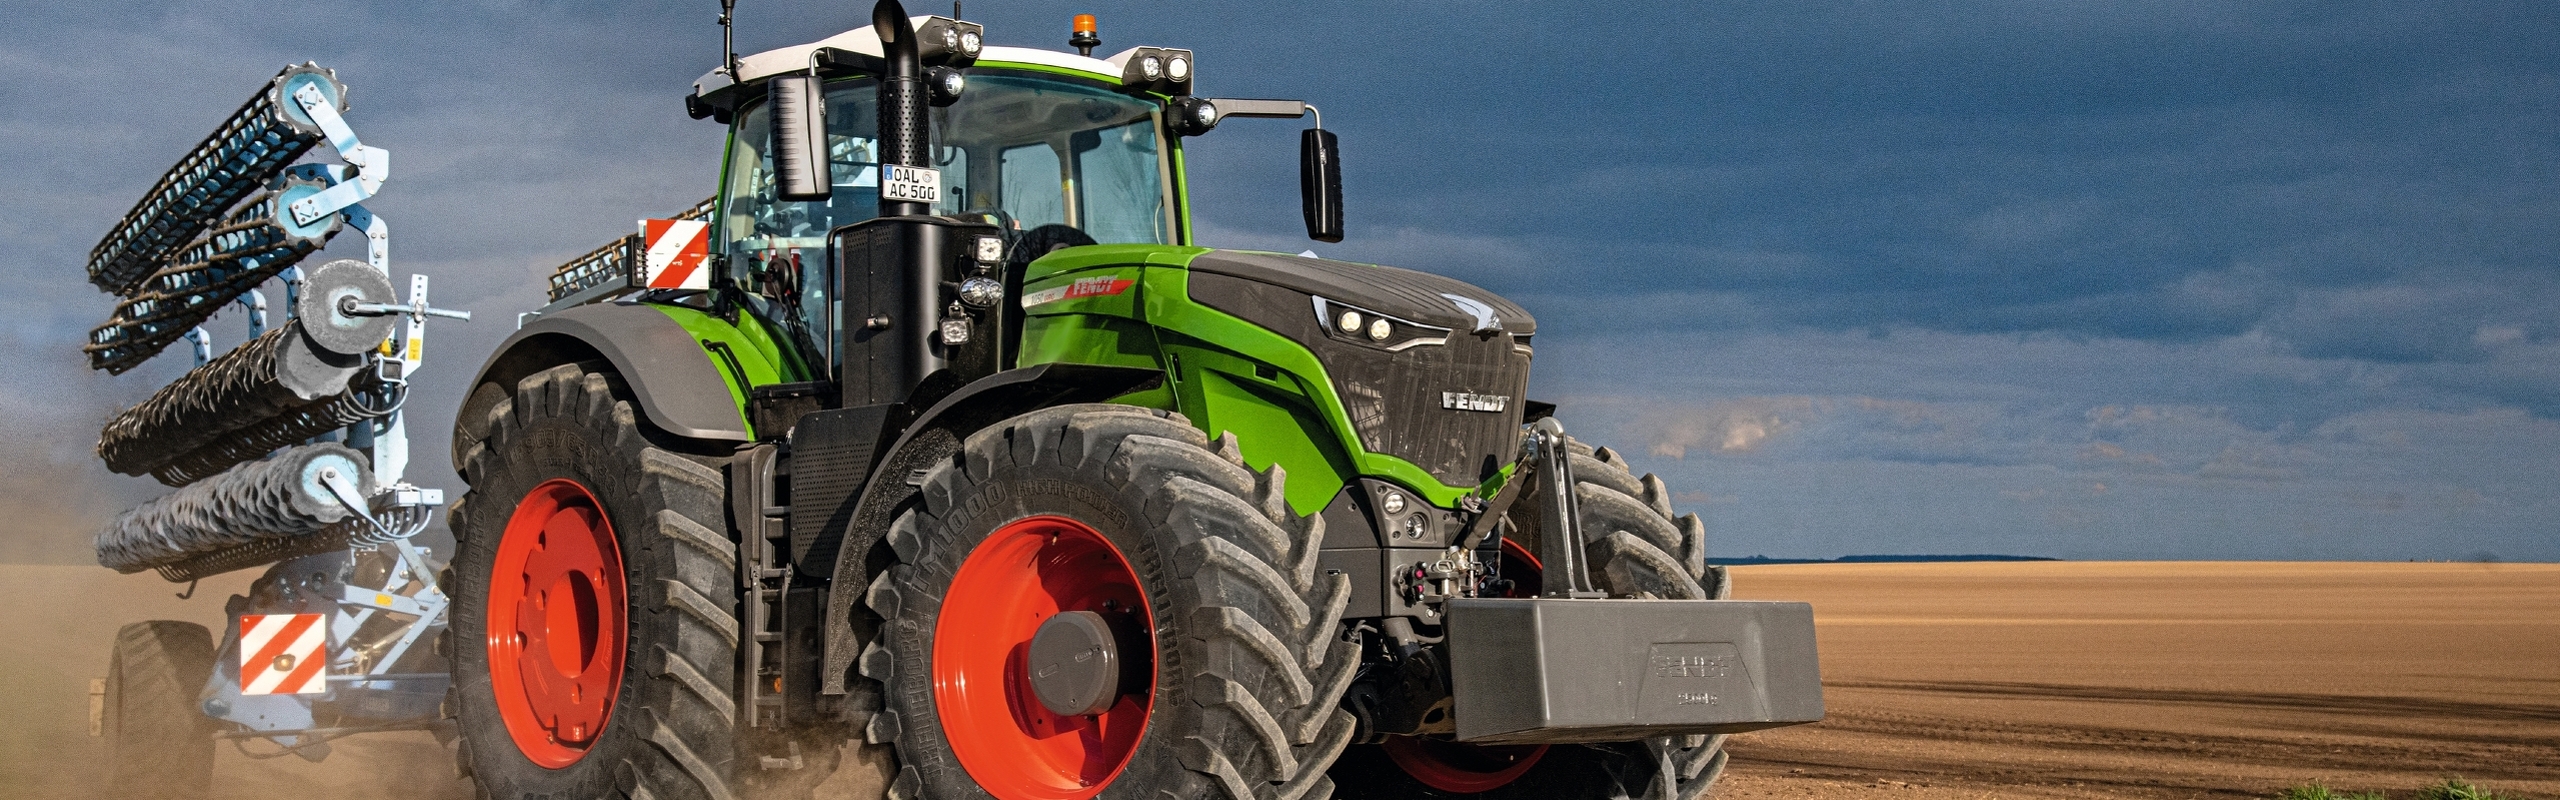 A Fendt 1000 Vario - Nagyteljesítményű traktor a szántóföldön és közúton egyaránt használható. Fedezze fel nagyteljesítményű modellünk összes kiemelkedő tulajdonságát!